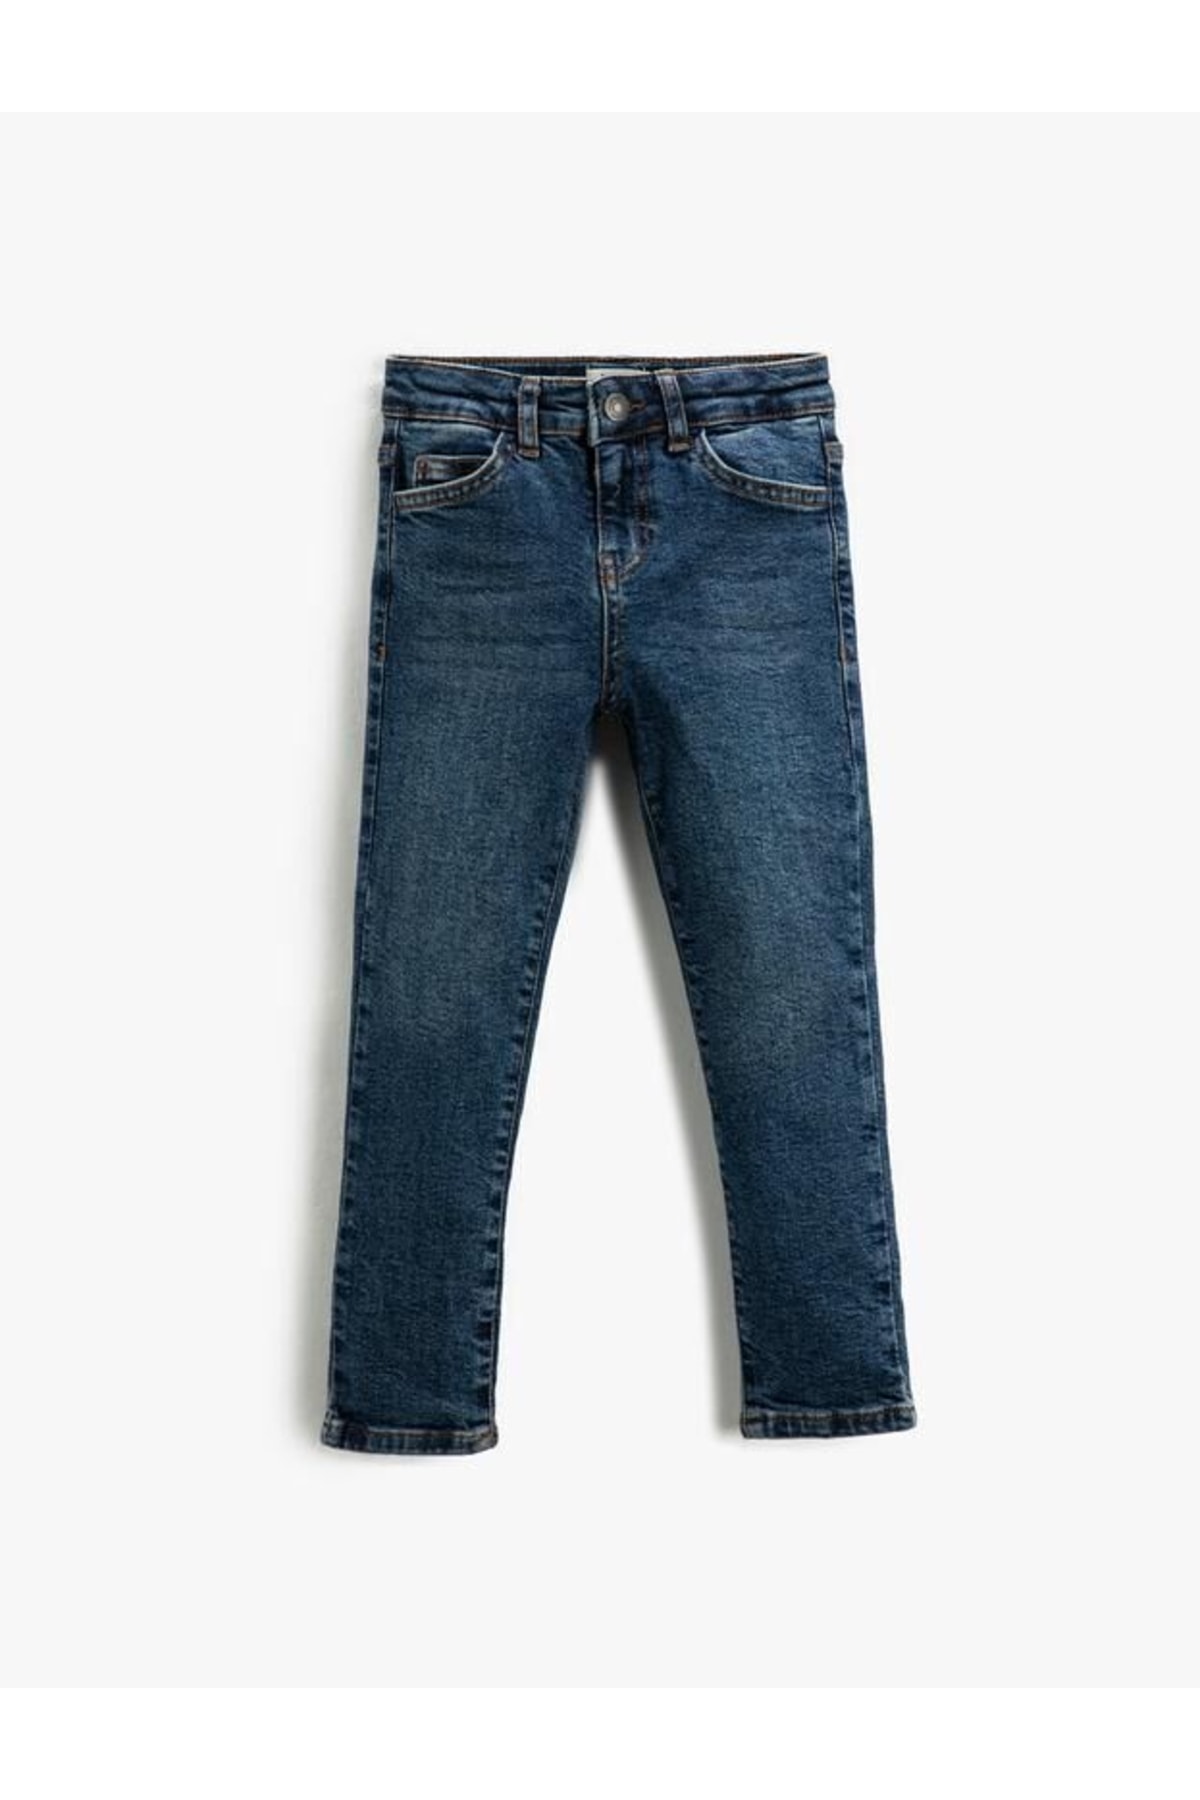 Levně Koton Boys' Jeans Straight Leg Regular Waist - Straight Jeans